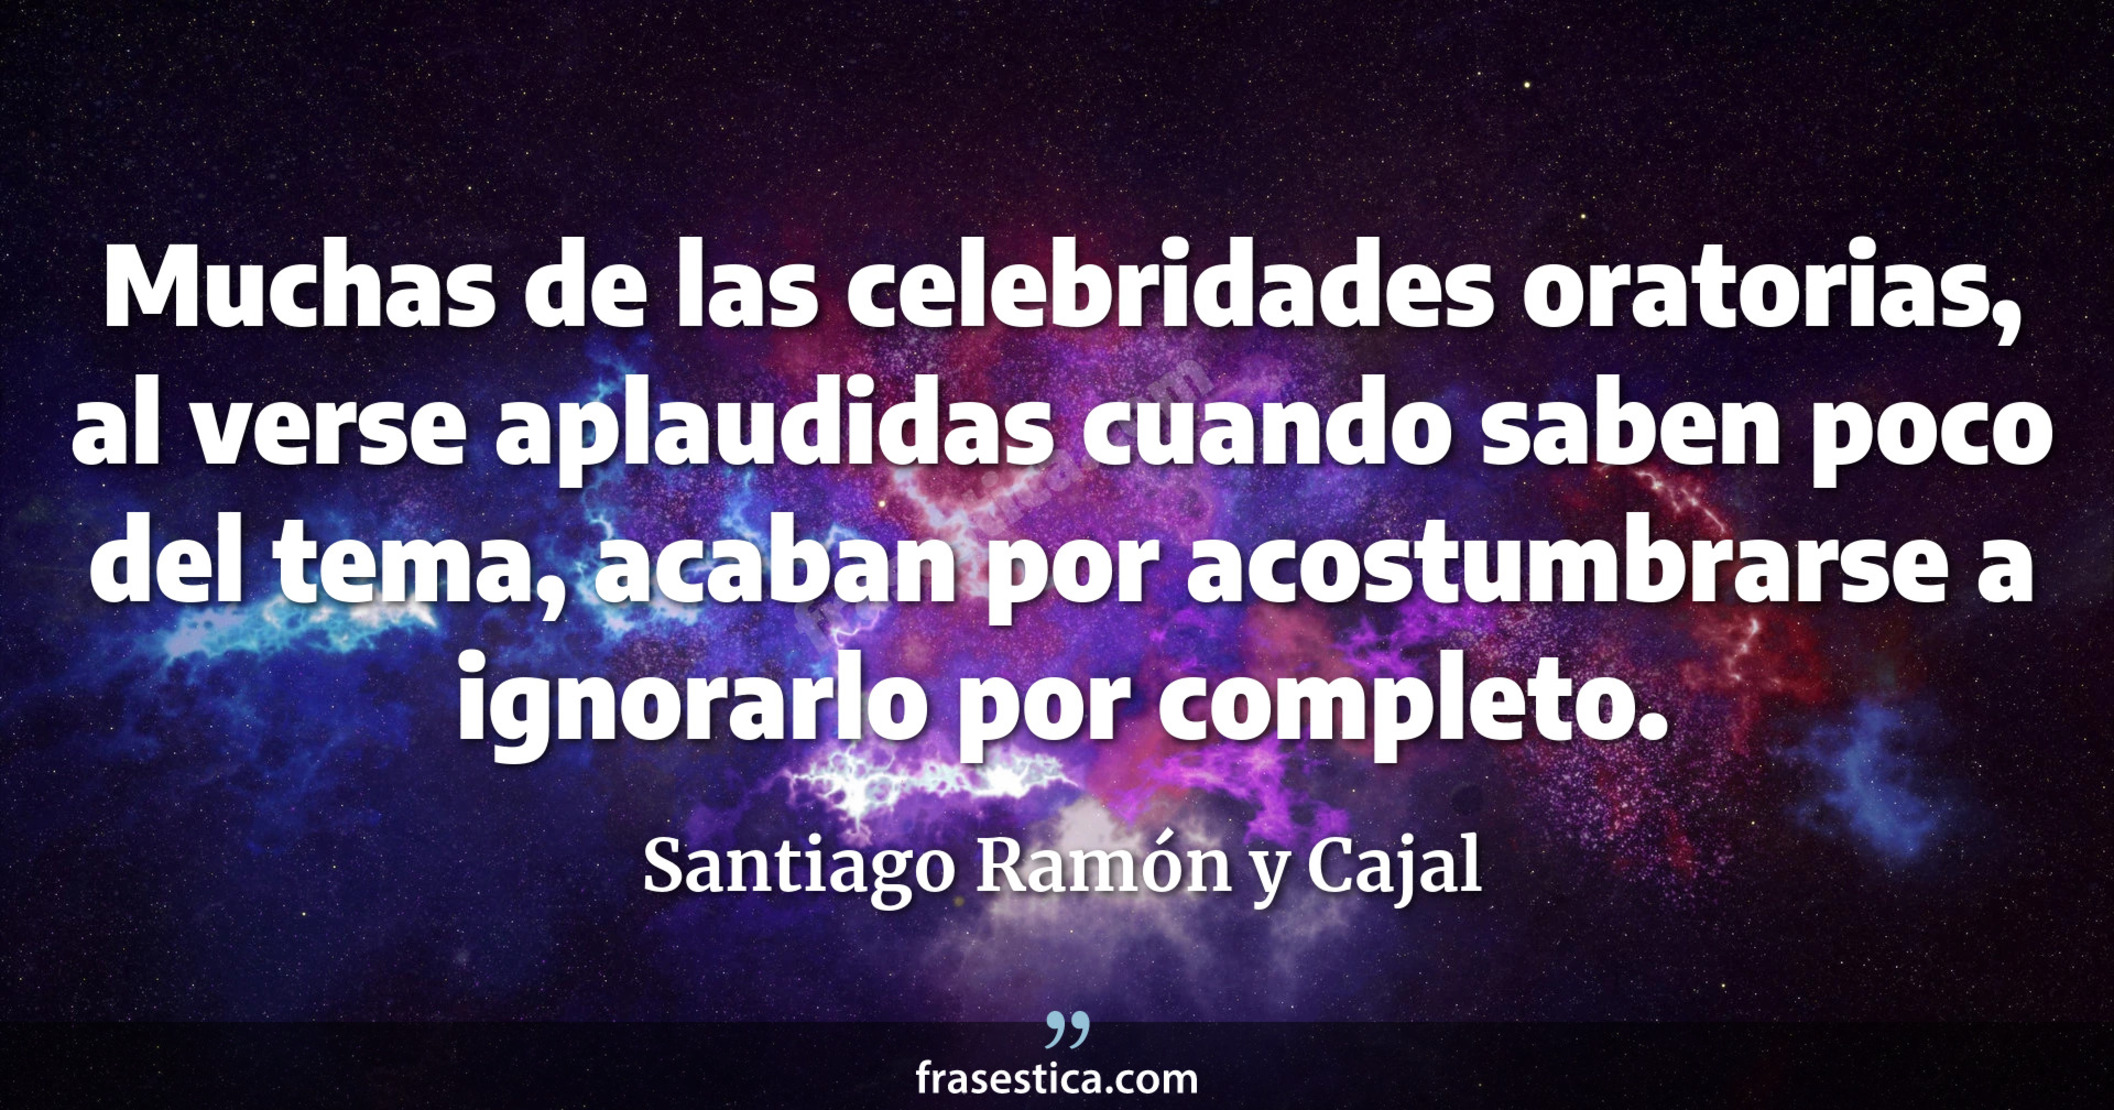 Muchas de las celebridades oratorias, al verse aplaudidas cuando saben poco del tema, acaban por acostumbrarse a ignorarlo por completo. - Santiago Ramón y Cajal